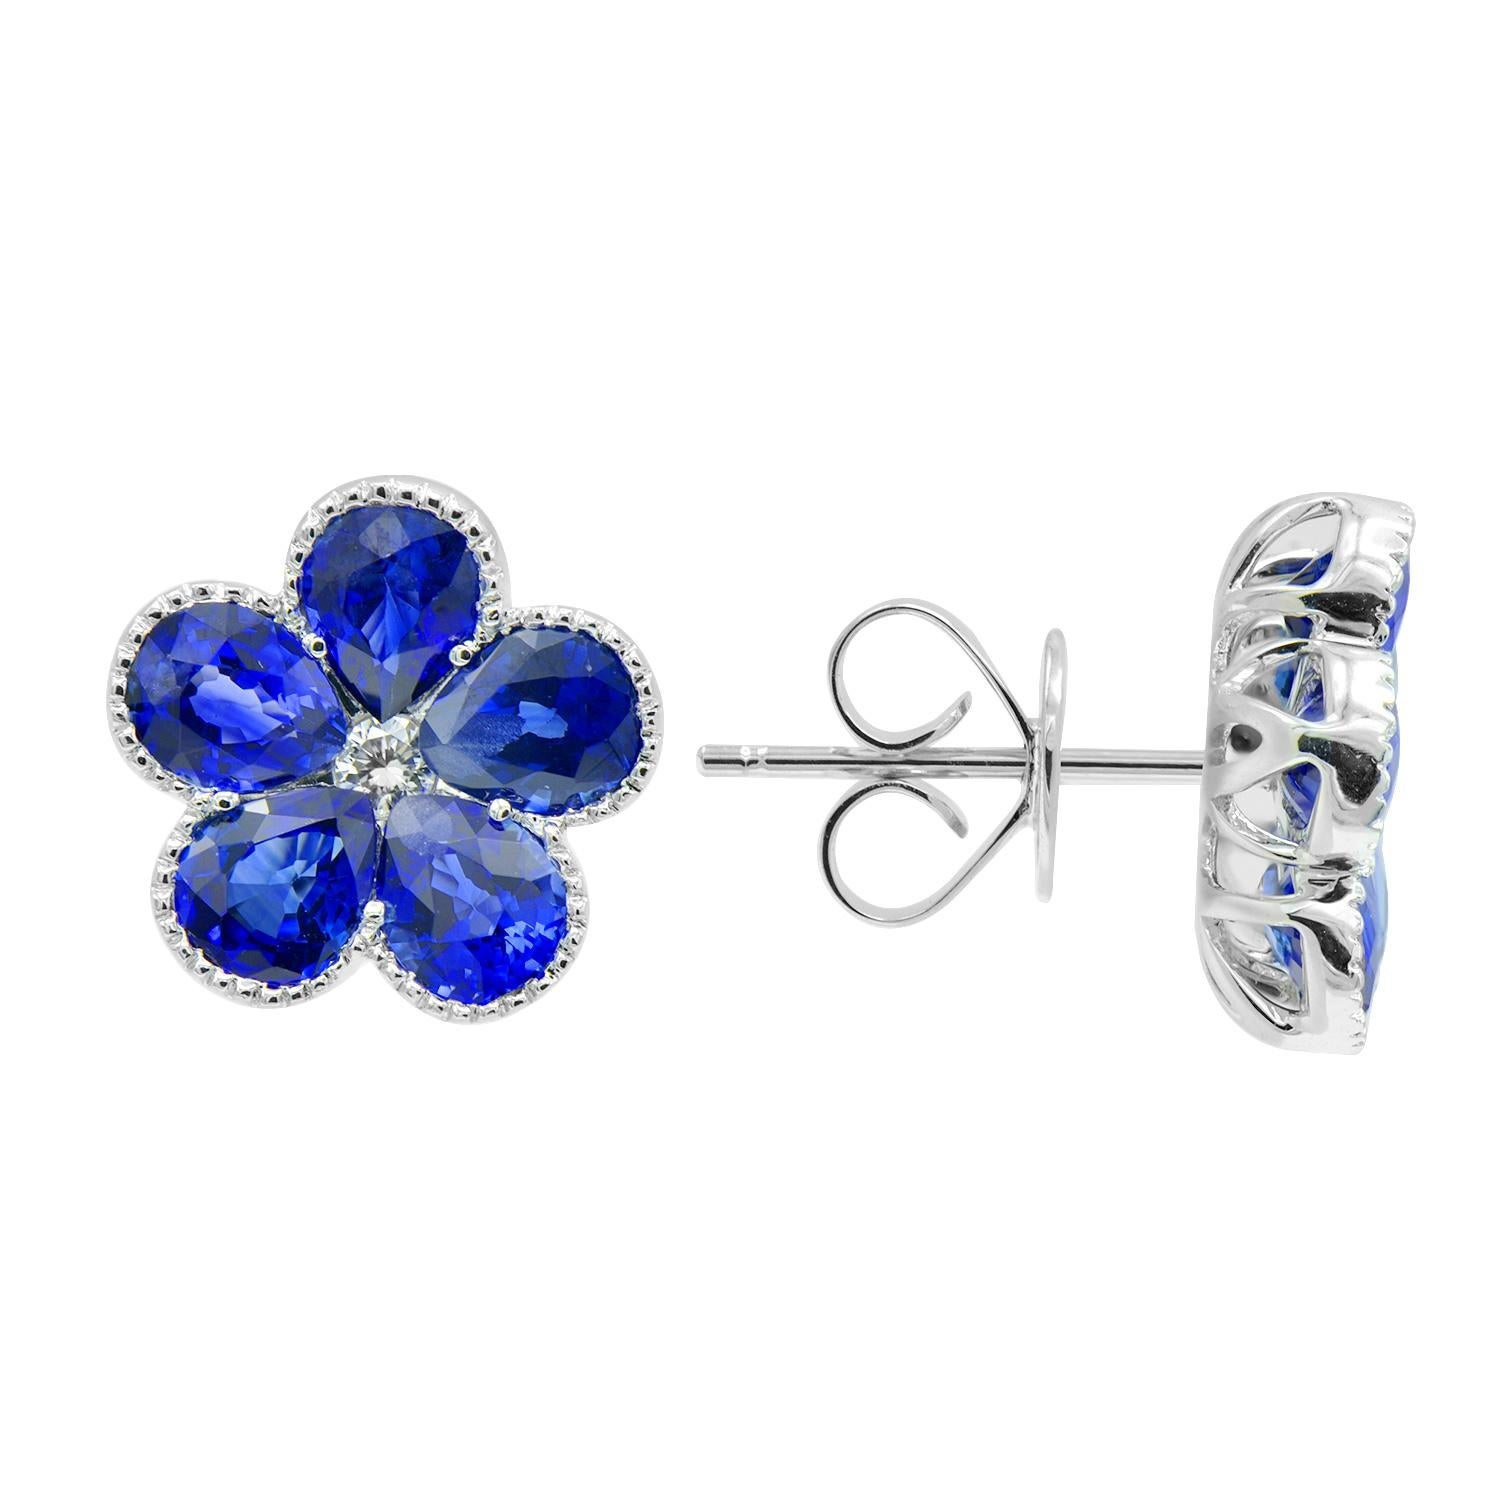 Diese wunderschönen Ohrringe bestehen aus 10 birnenförmigen Saphiren, die perfekt in Form einer Blume mit einem Diamanten in der Mitte gefasst sind. Die Saphire haben insgesamt 3,68 Karat und die Diamanten in der Mitte 0,07 Karat. Die Steine sind in